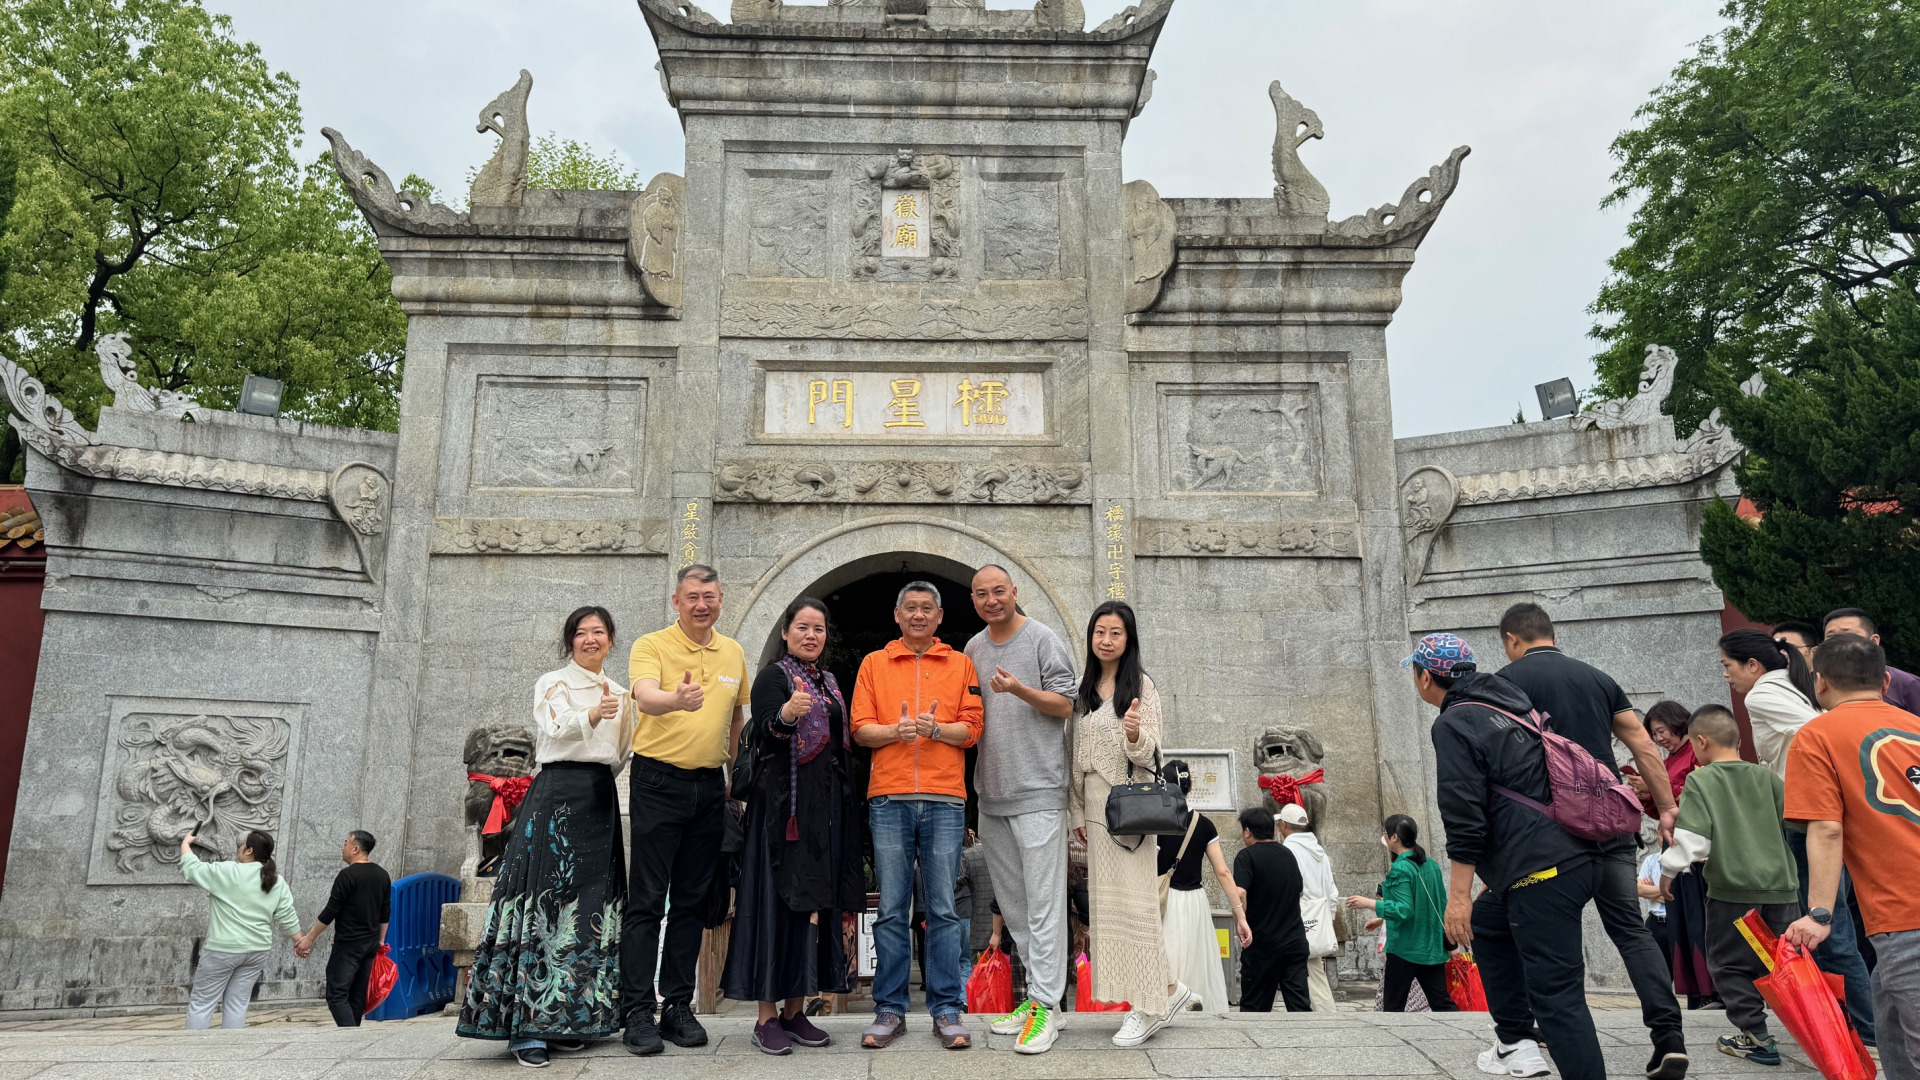 ■我徐徐步入拥有1300年历史的南岳大庙，大家一起穿越过“棂星门”，就意味着我们踏入了“江南小故宫”。
